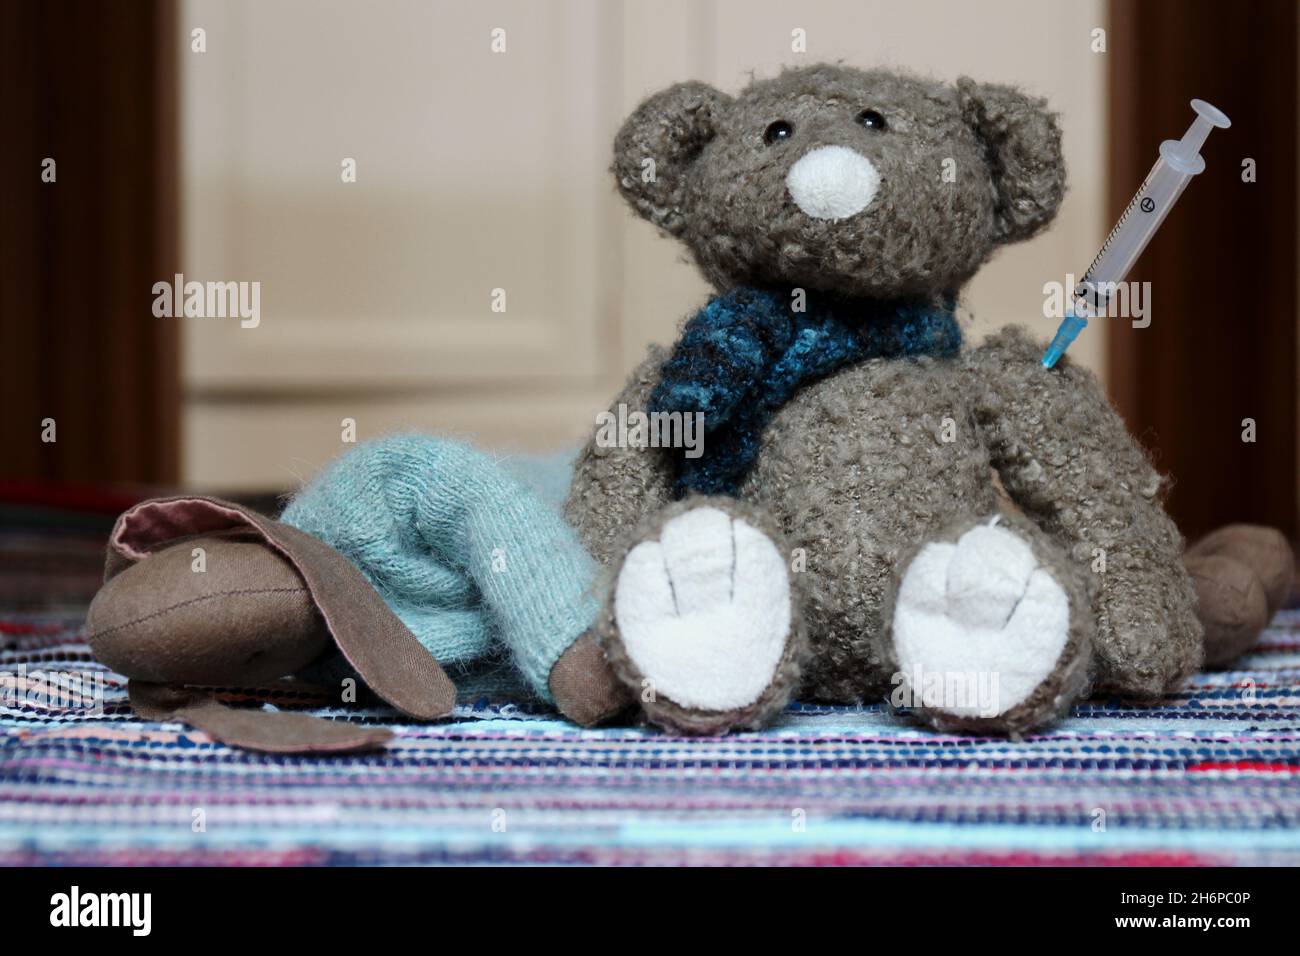 Zwei Kuscheltiere, ein liegender Hase und ein sitzender Teddy mit Spritze im Arm auf einem bunten Teppich. Stock Photo